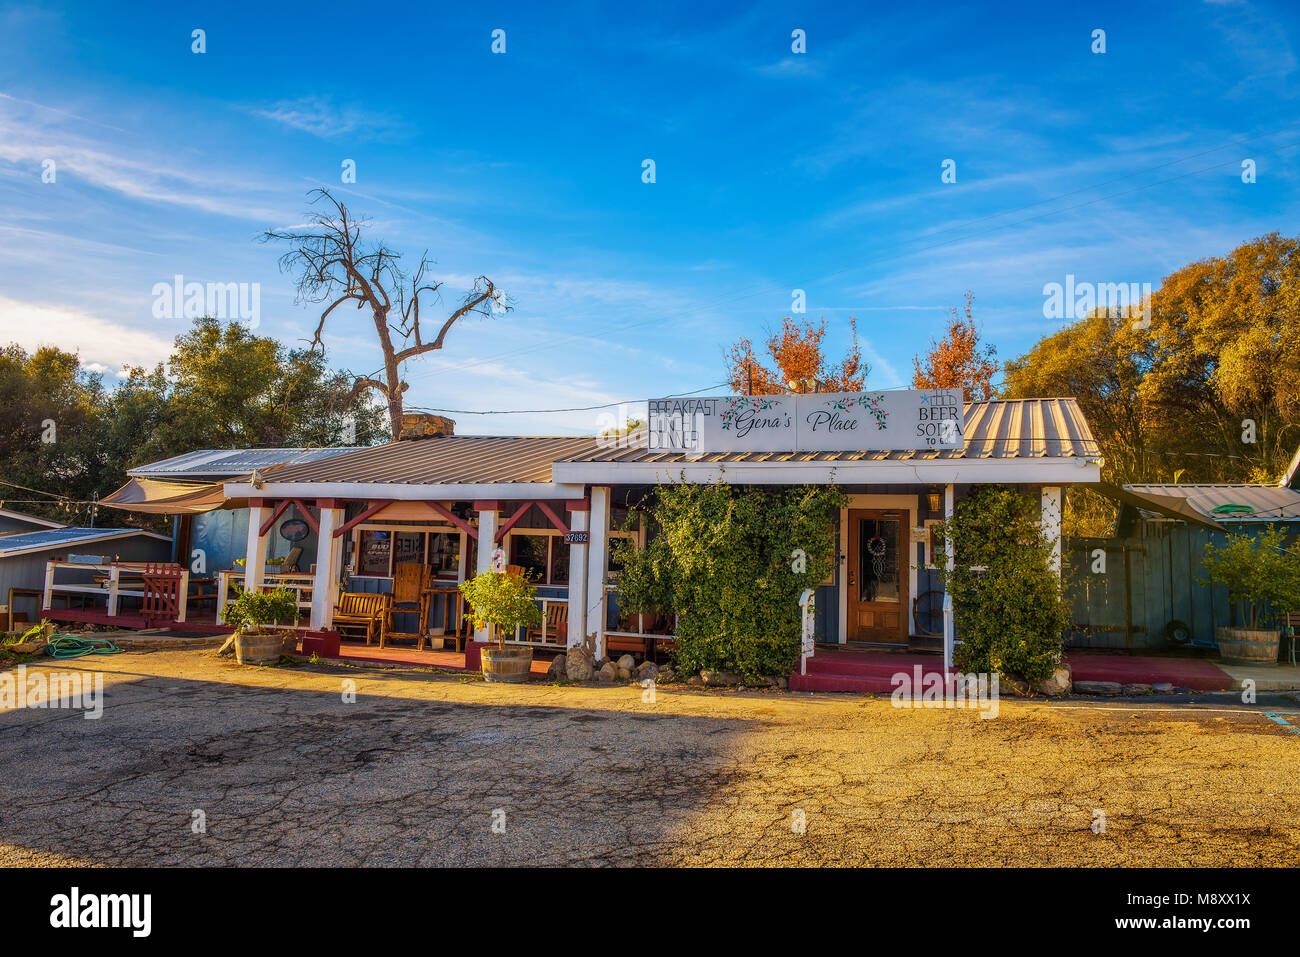 Von Gena Sierra Inn Motel und Restaurant in der Nähe Sequoia National Park Stockfoto